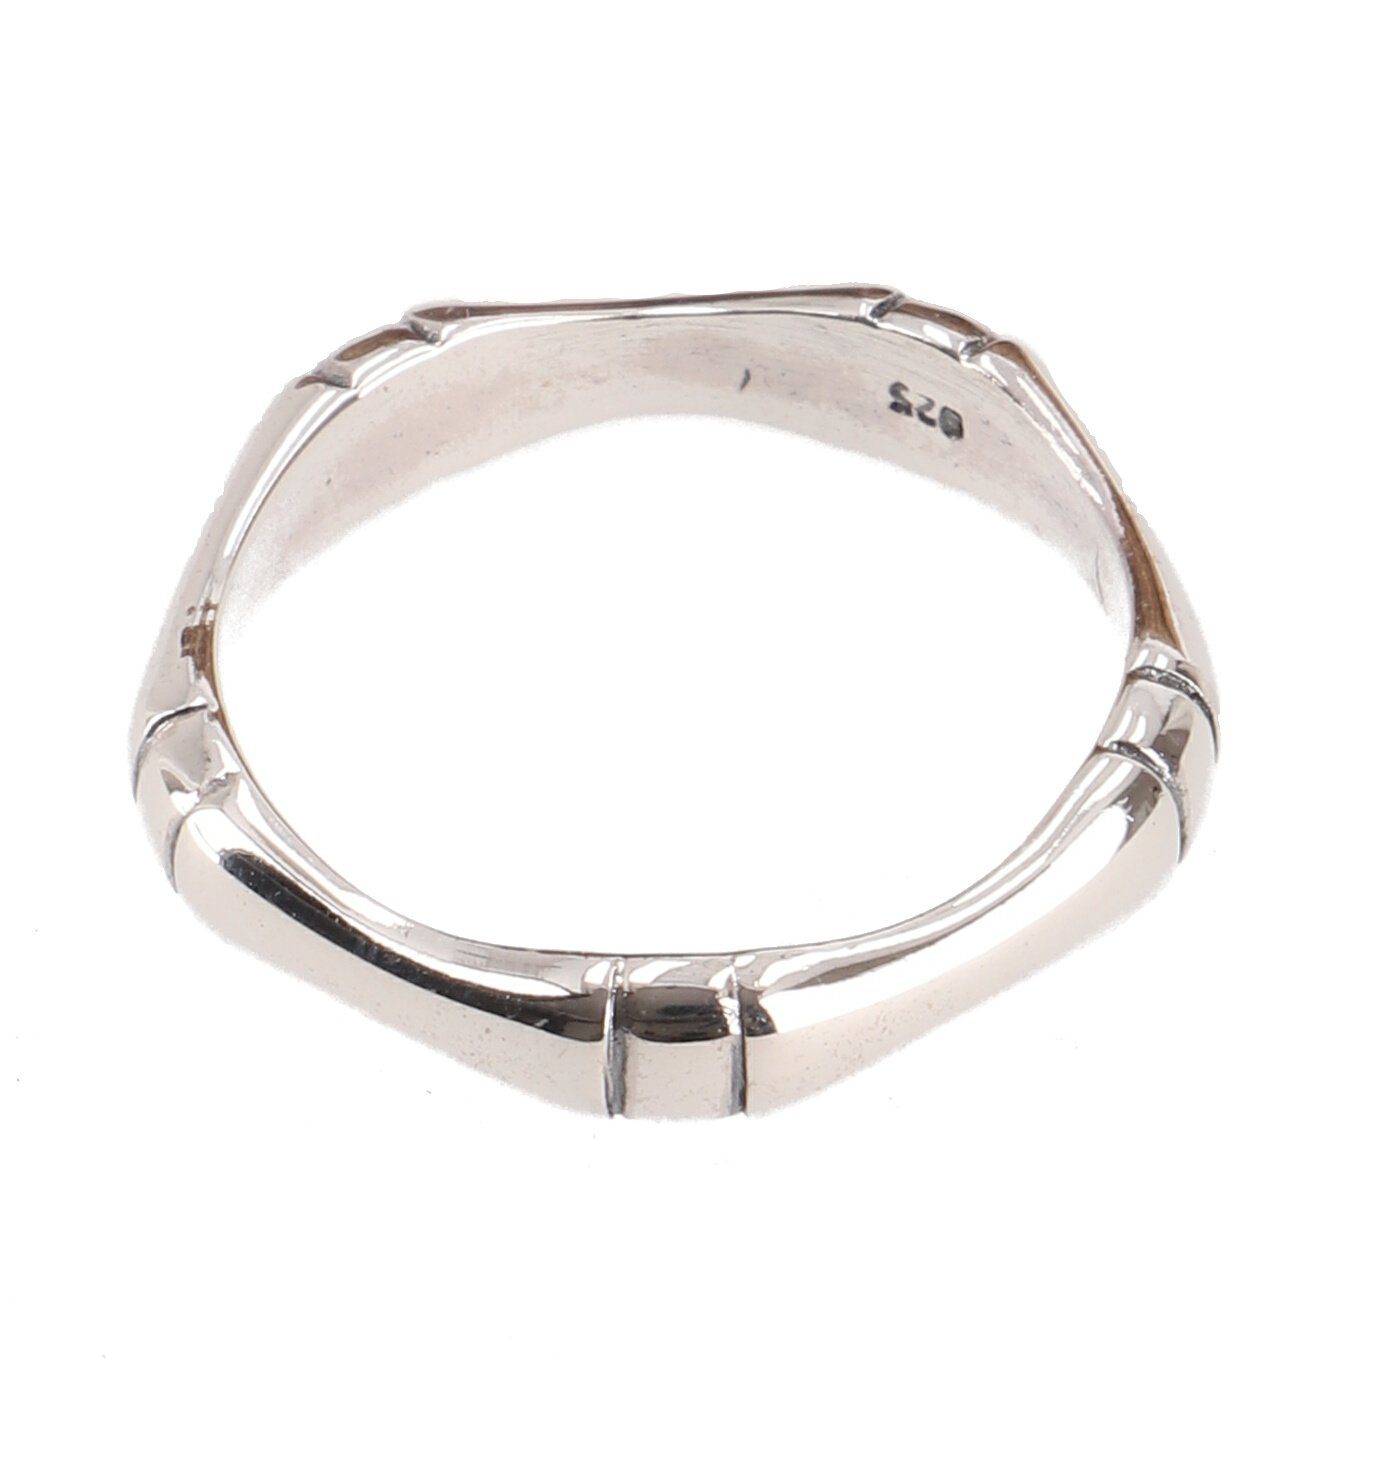 Guru-Shop Silberring Silberring, Boho Style Ethno Ring - Modell 35 58 (18,5 mm)